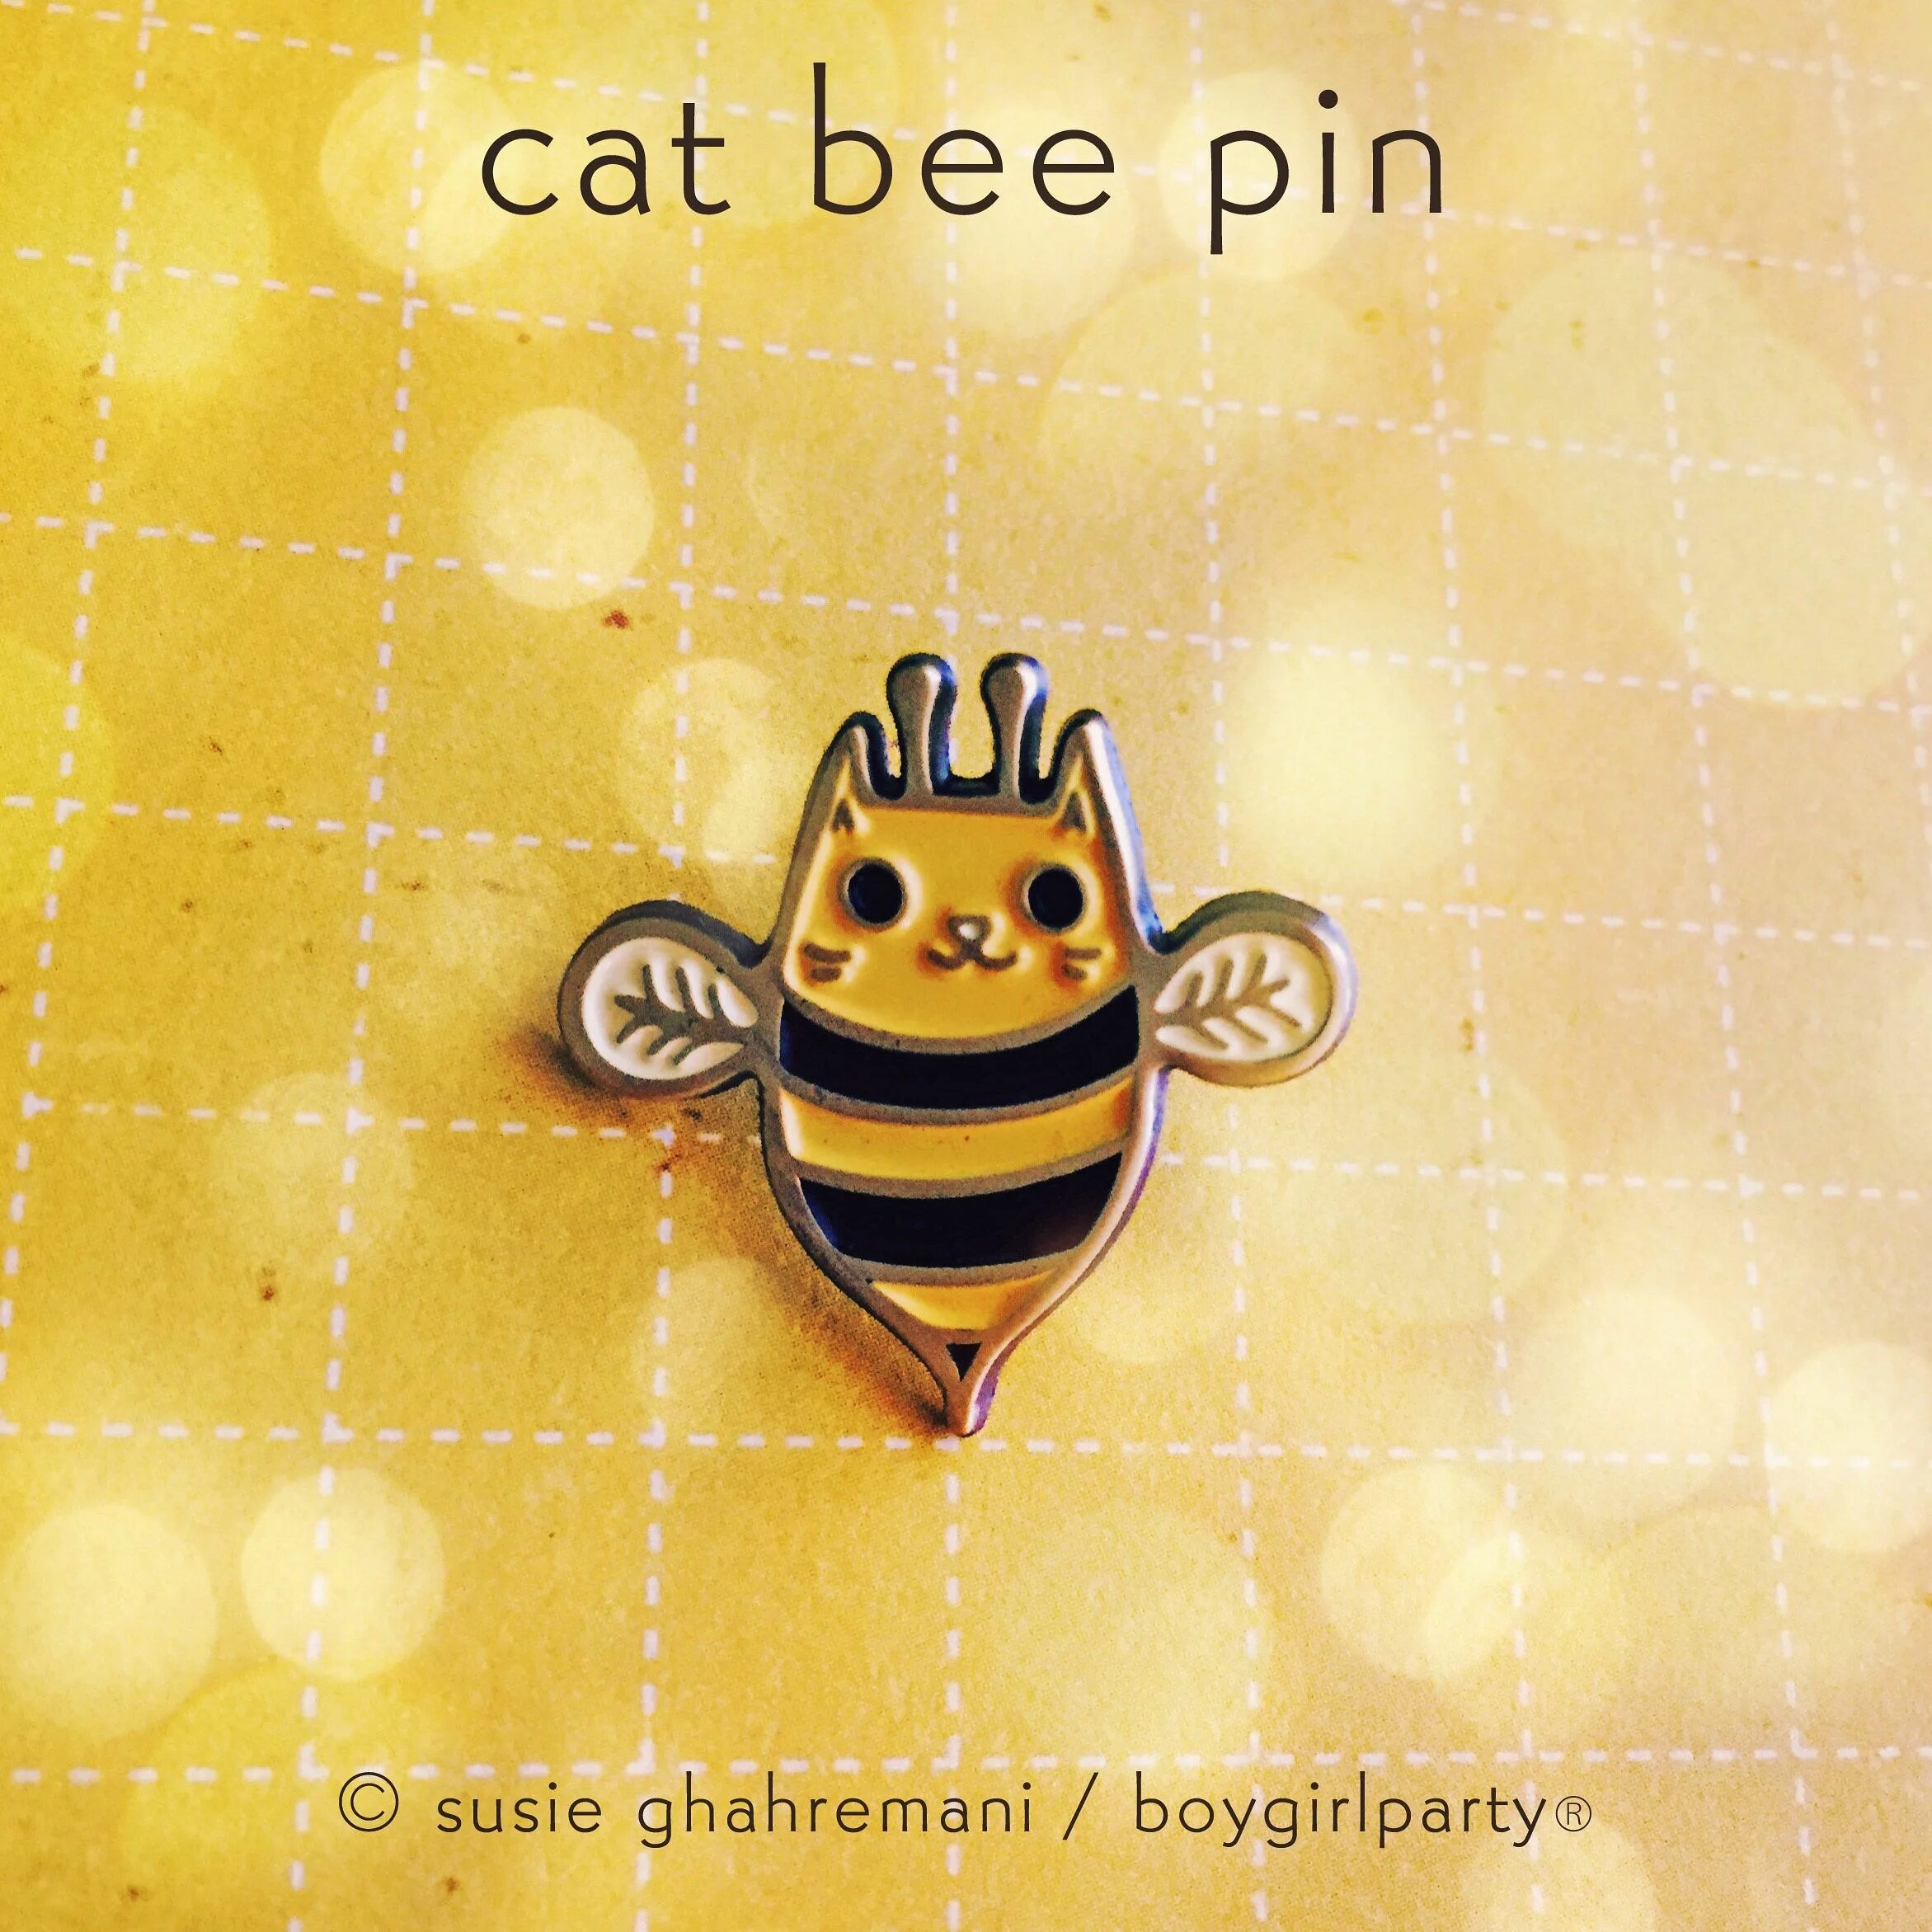 Включи поймай тини пинов. Кошка пчела. Картинки Cat Bee. Bee Pin. Sweet little Bumble Bee обложка.